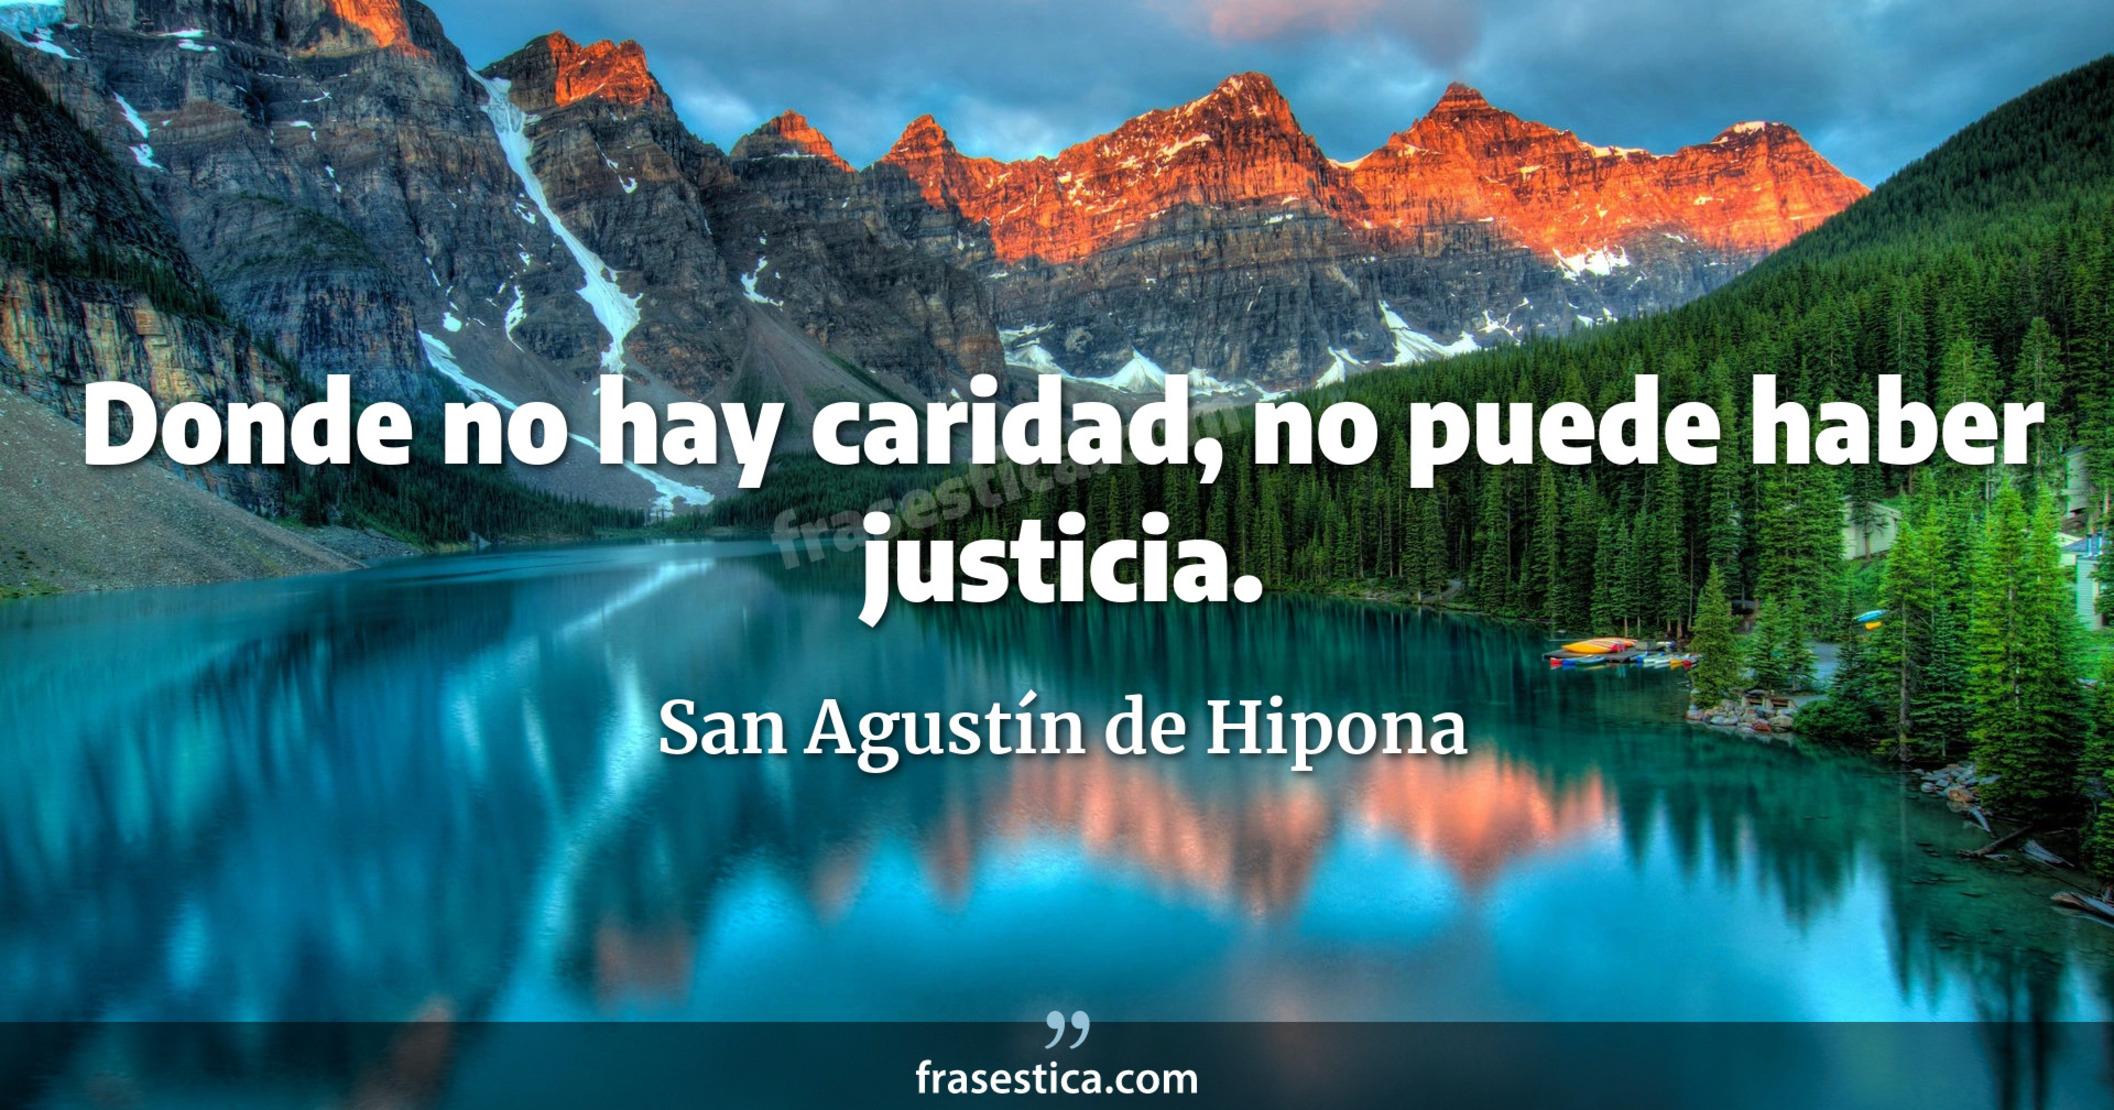 Donde no hay caridad, no puede haber justicia. - San Agustín de Hipona